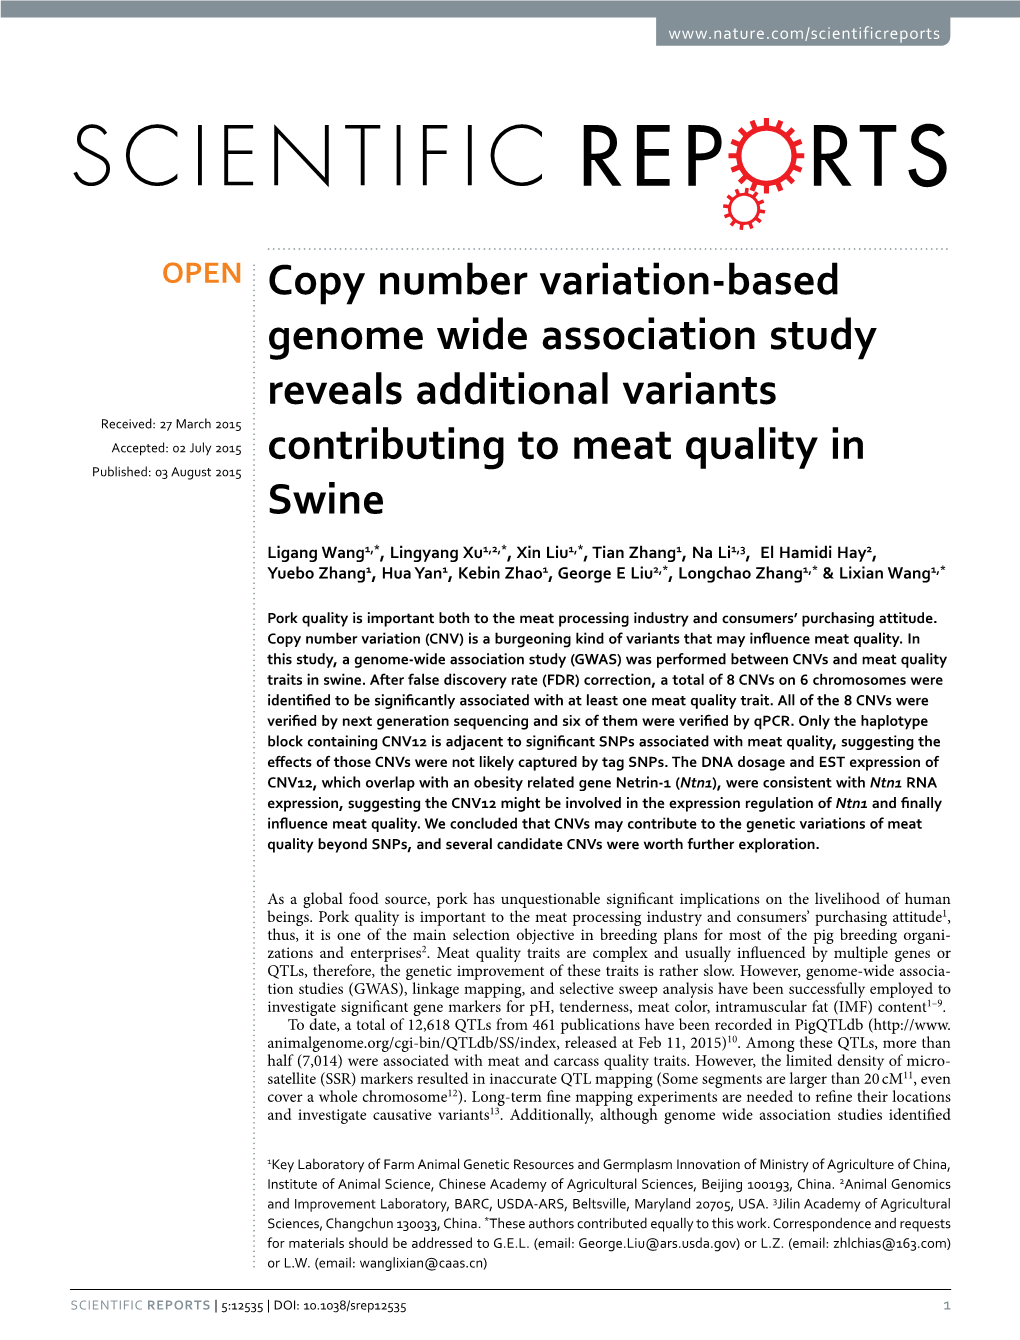 Copy Number Variation-Based Genome Wide Association Study